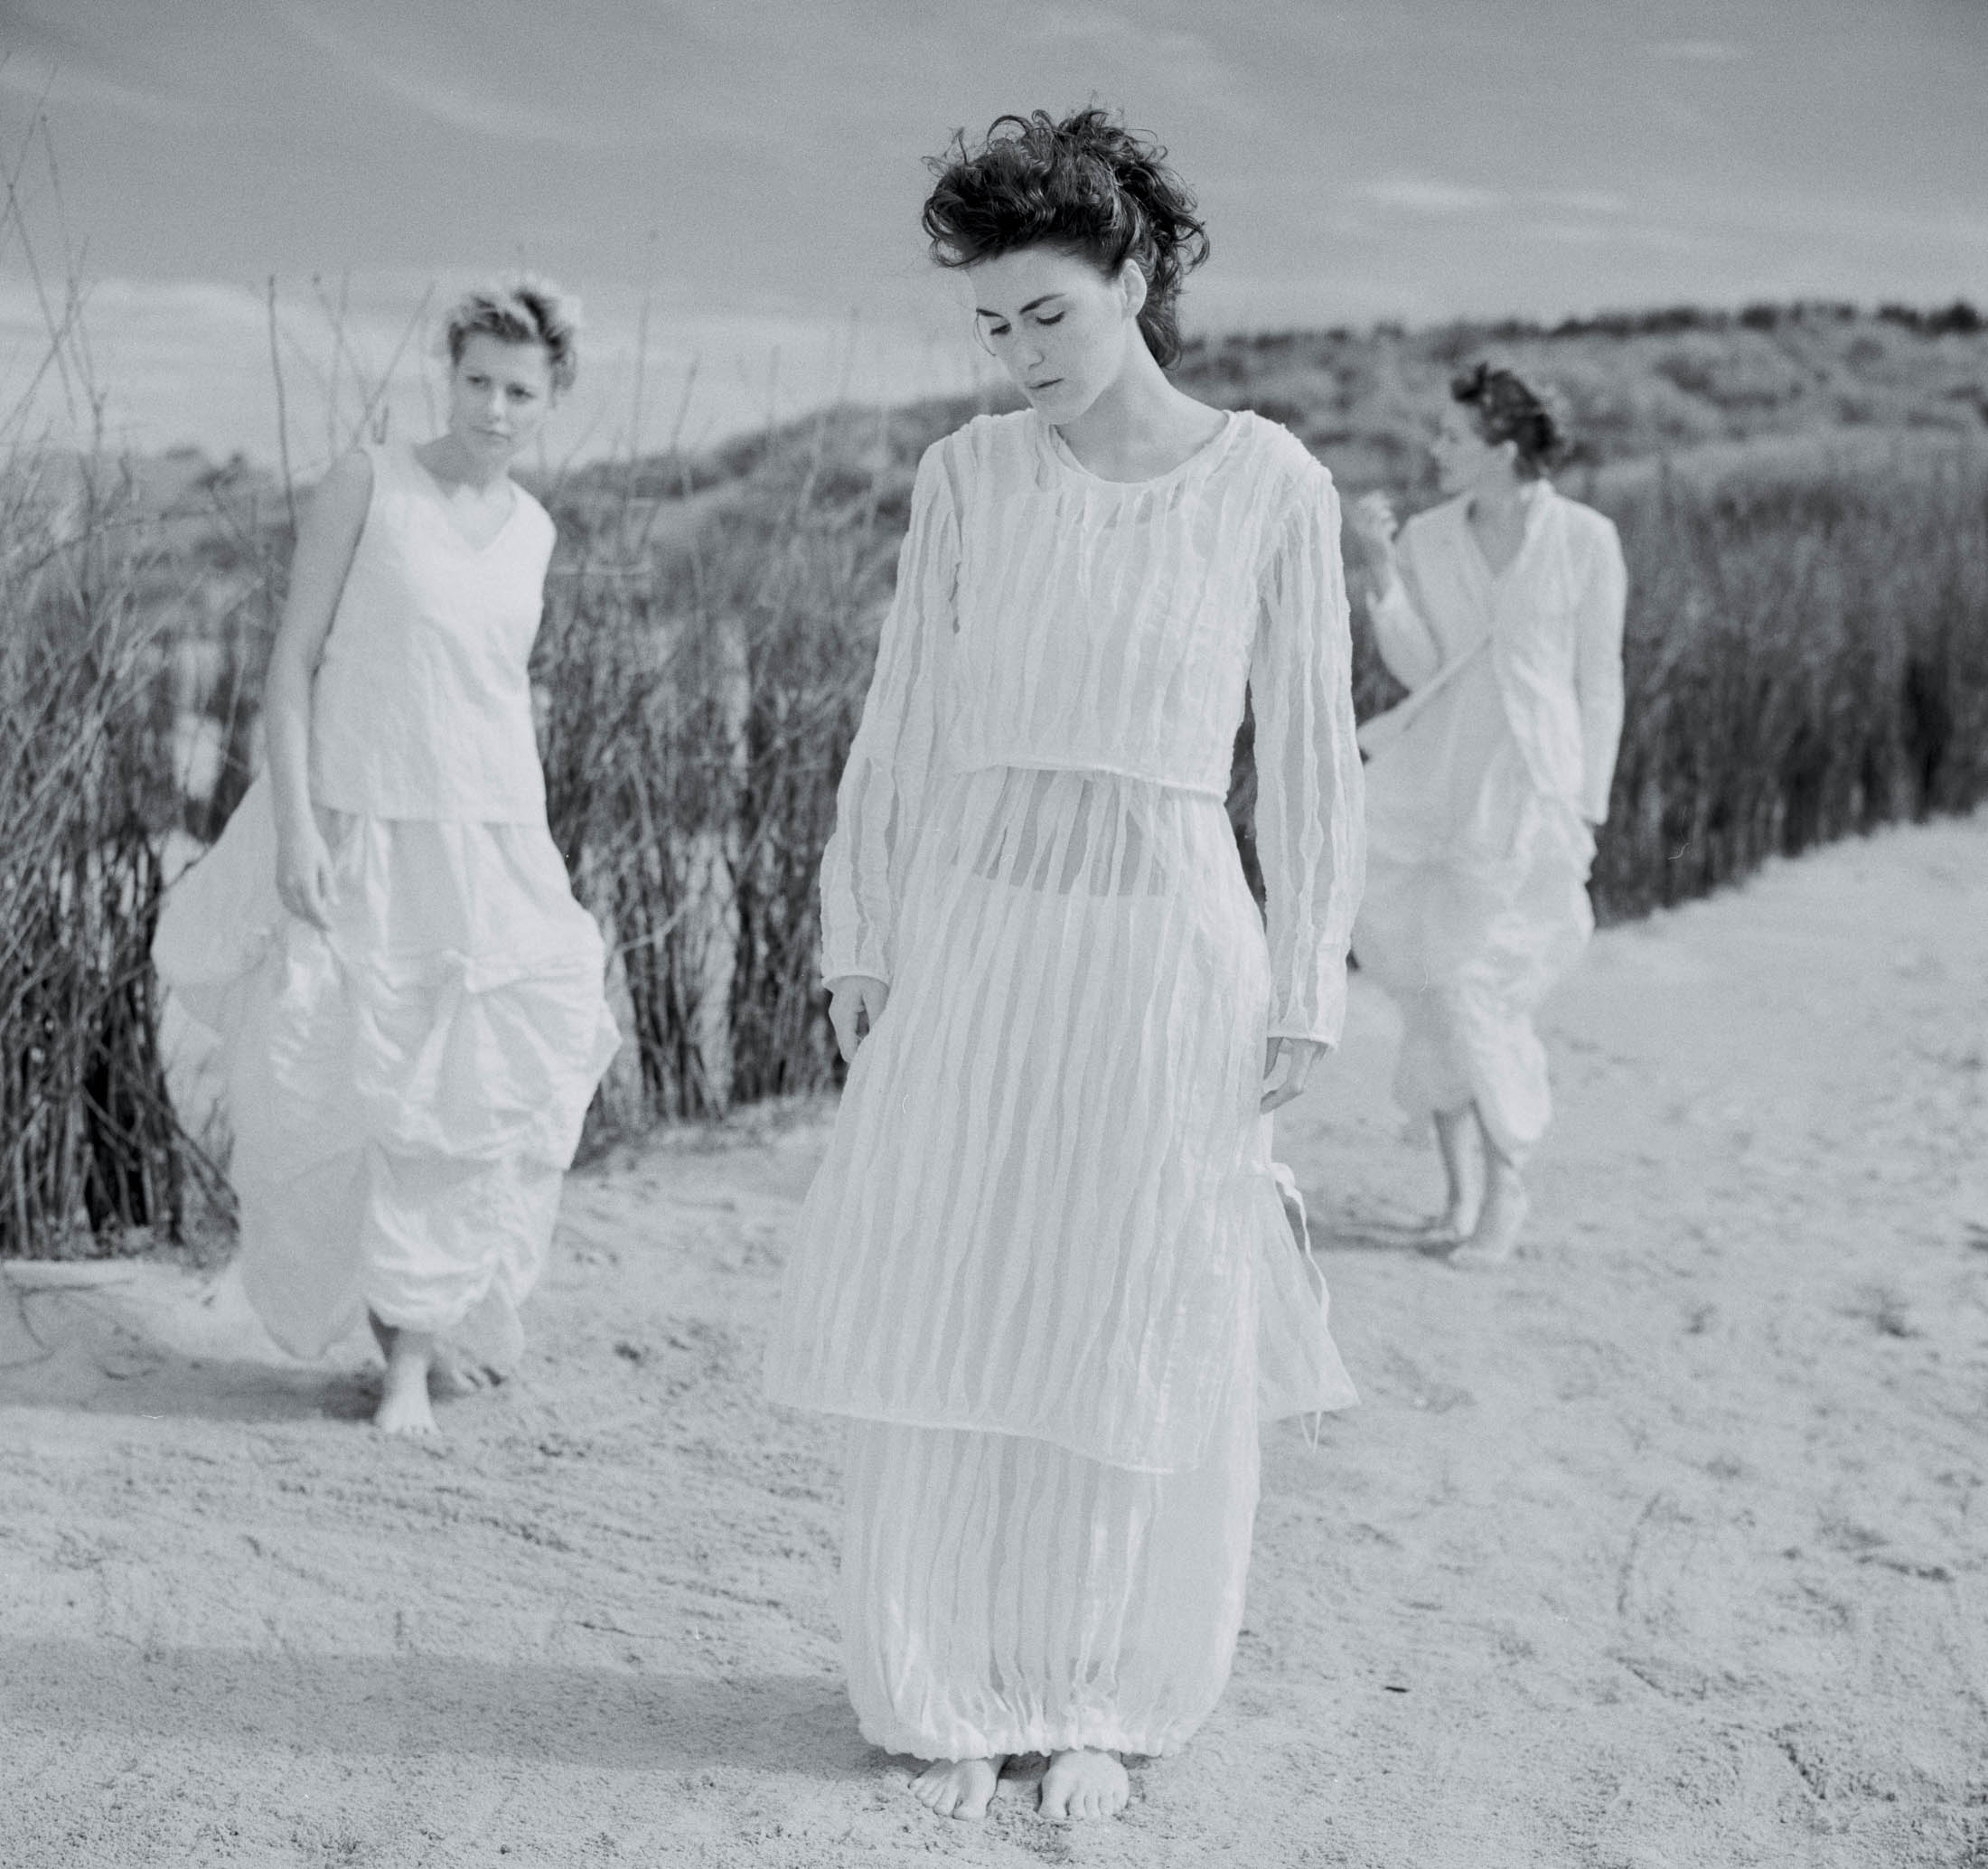 Drei Frauen in weißen Kleidern gehen an einem Sandstrand spazieren, eine im Vordergrund blickt nach unten, die anderen im Hintergrund zwischen hohem Gras. Die Kulisse ruft eine heitere, zeitlose Atmosphäre hervor. © Fotografie Tomas Rodriguez